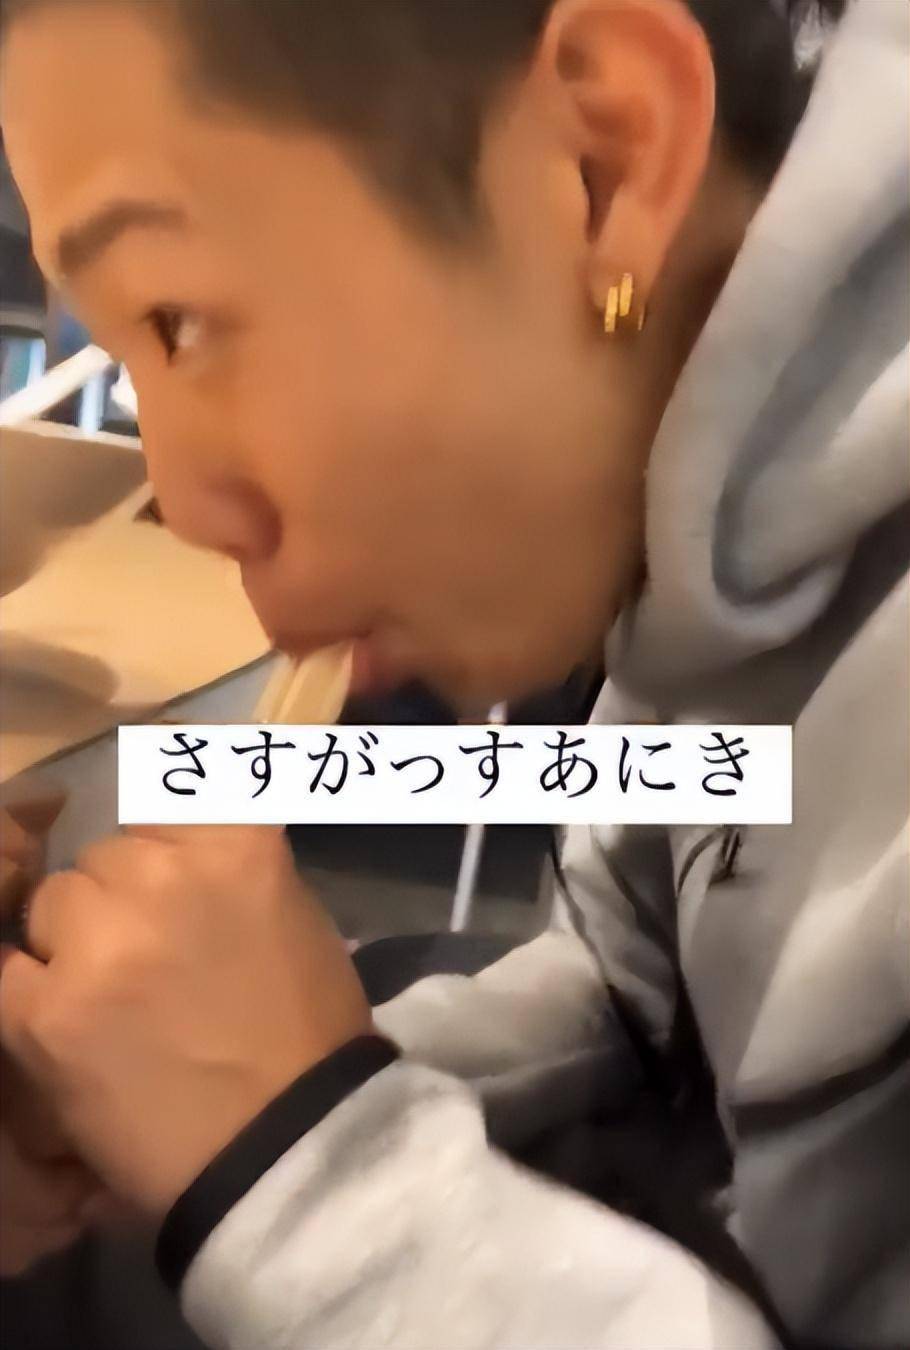 华为手机是什么启动器
:日本男子在拉面店抓起筷子舔后放回 投毒？